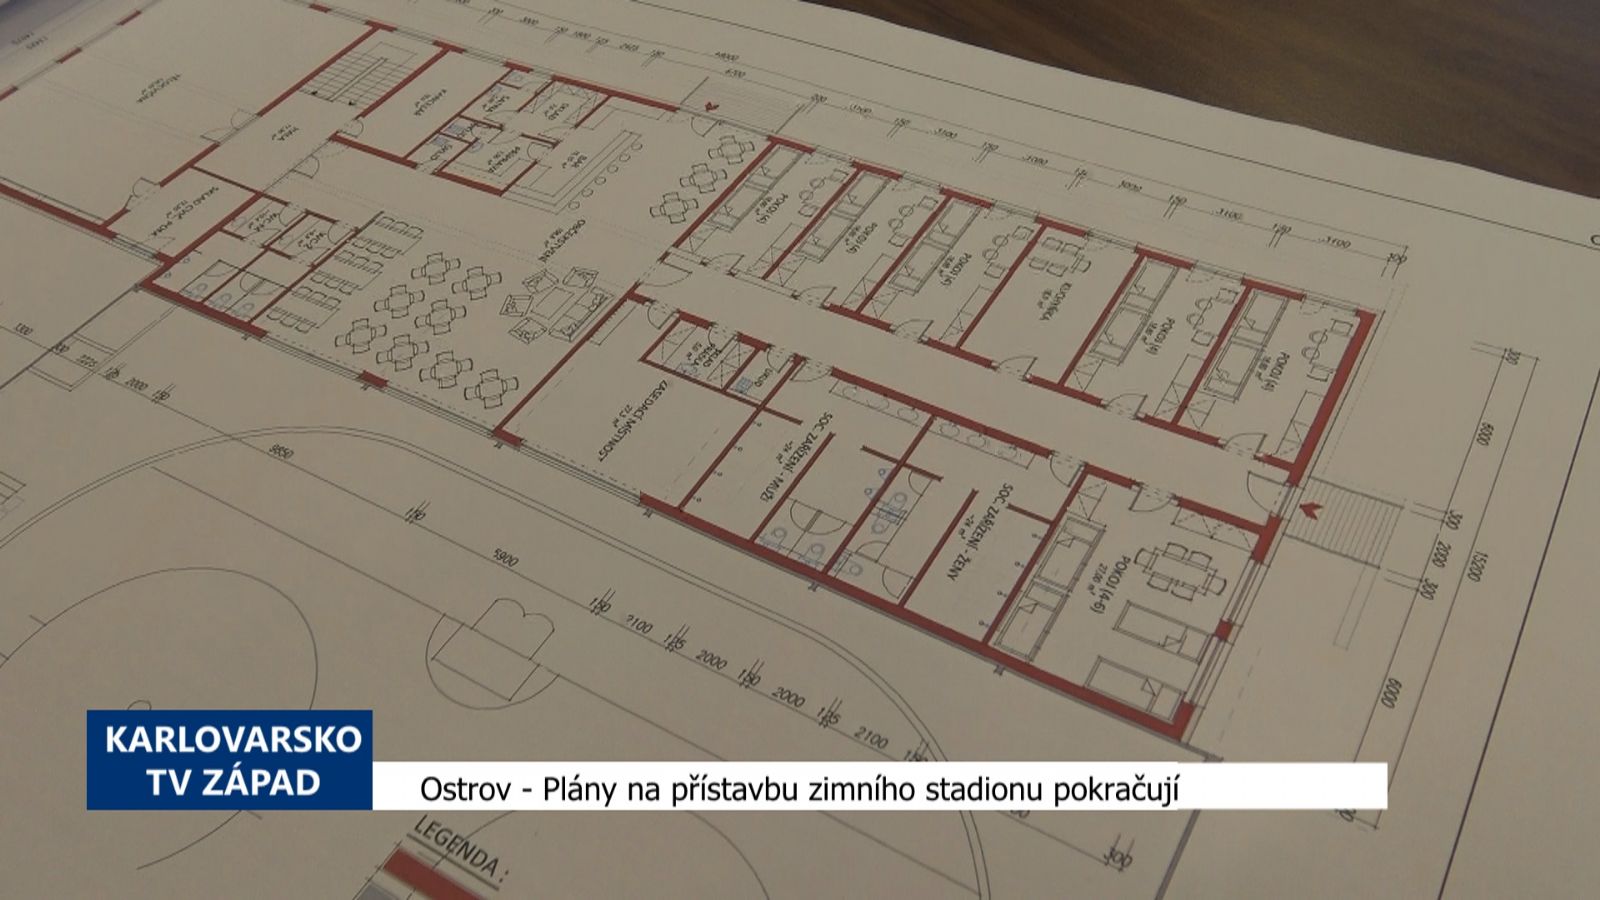 Ostrov: Plány na přístavbu zimní stadionu pokračují (TV Západ)